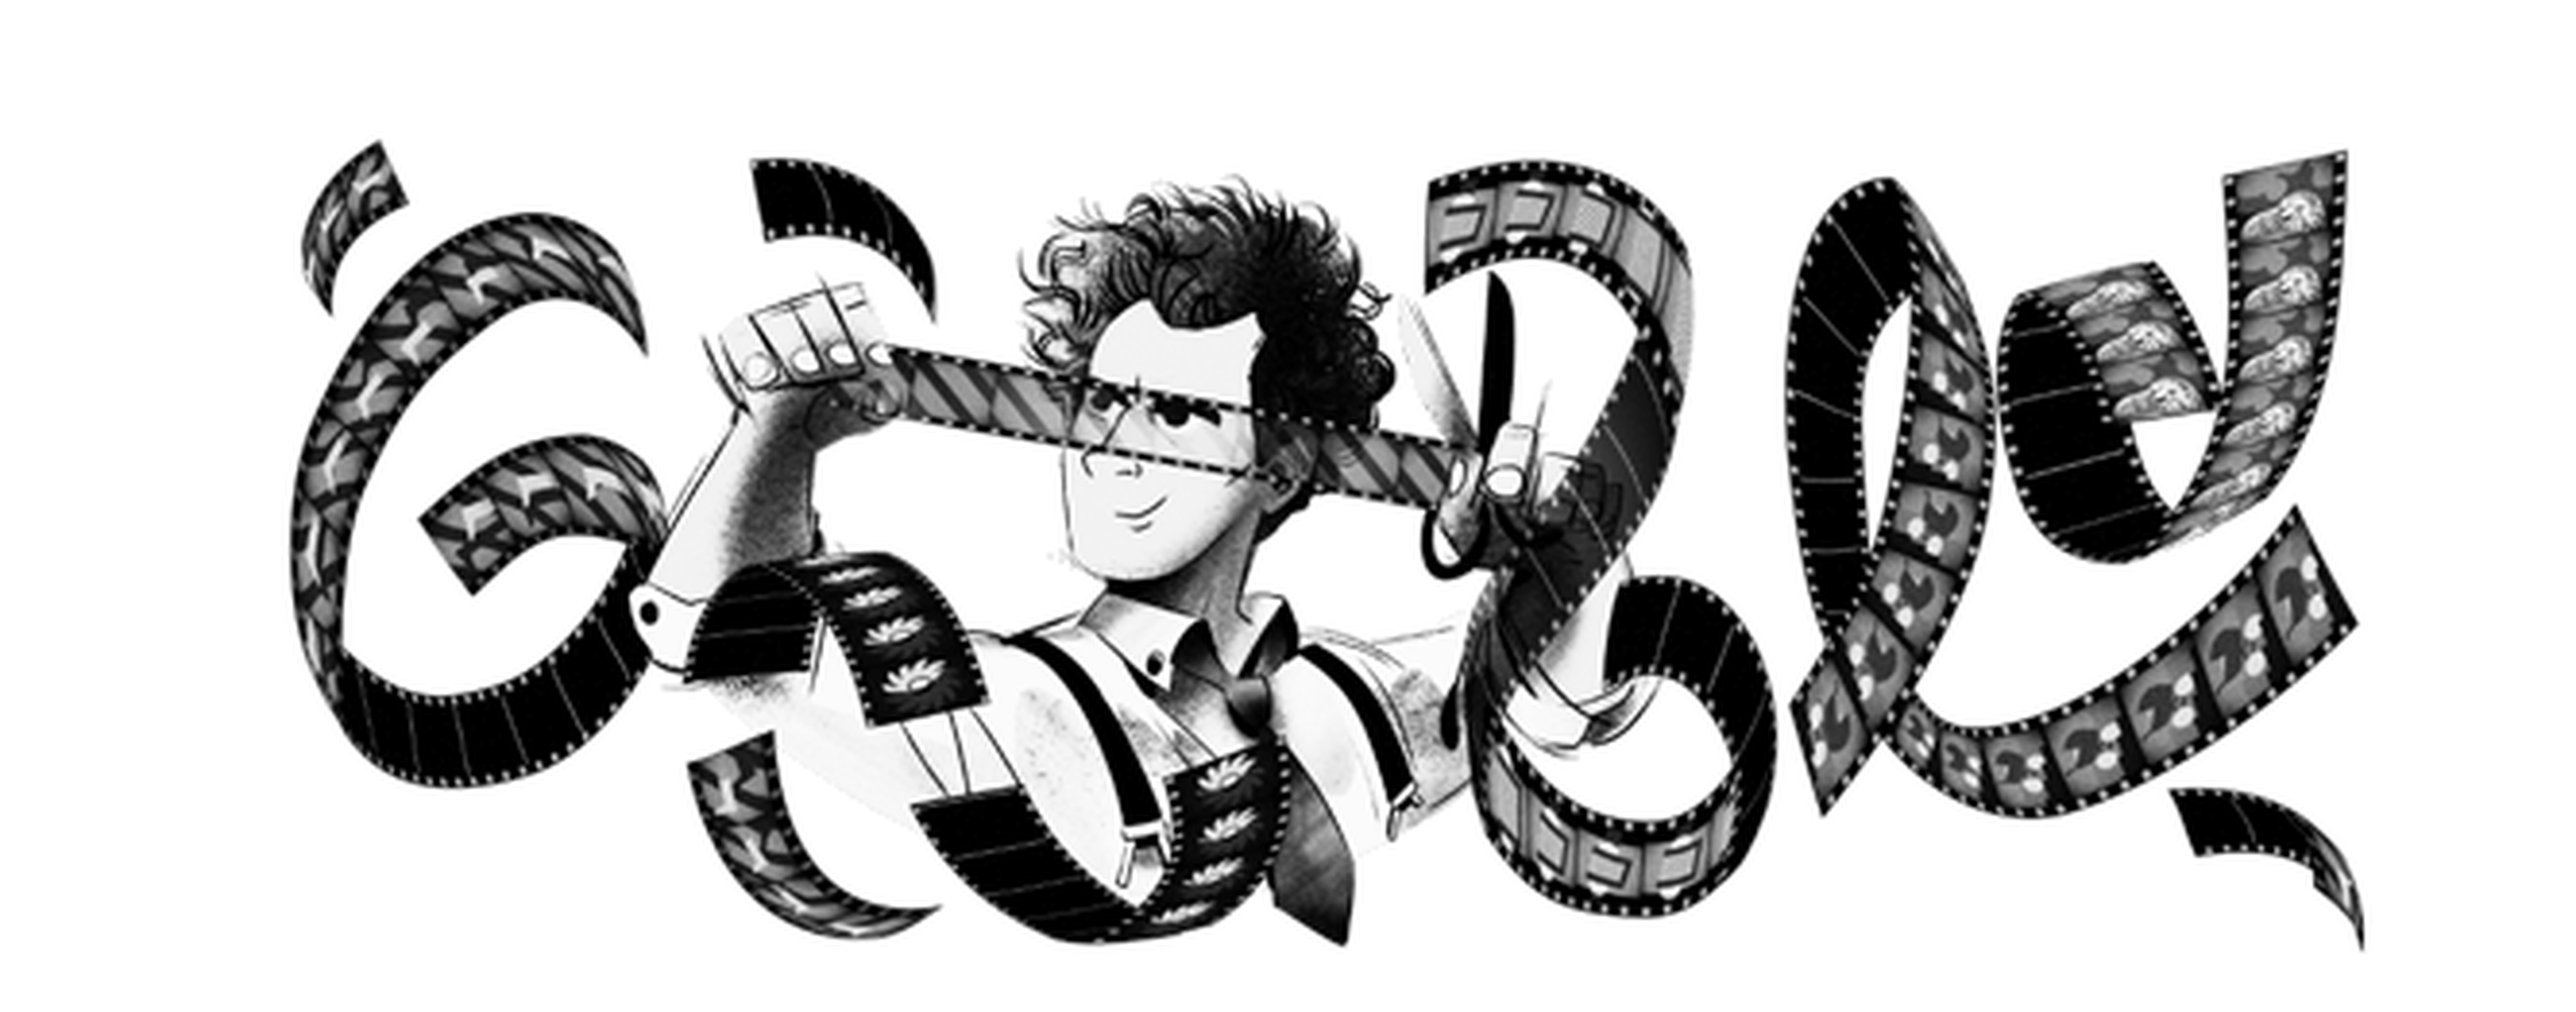 Sergei Eisenstein en el Doodle que le dedica Google.